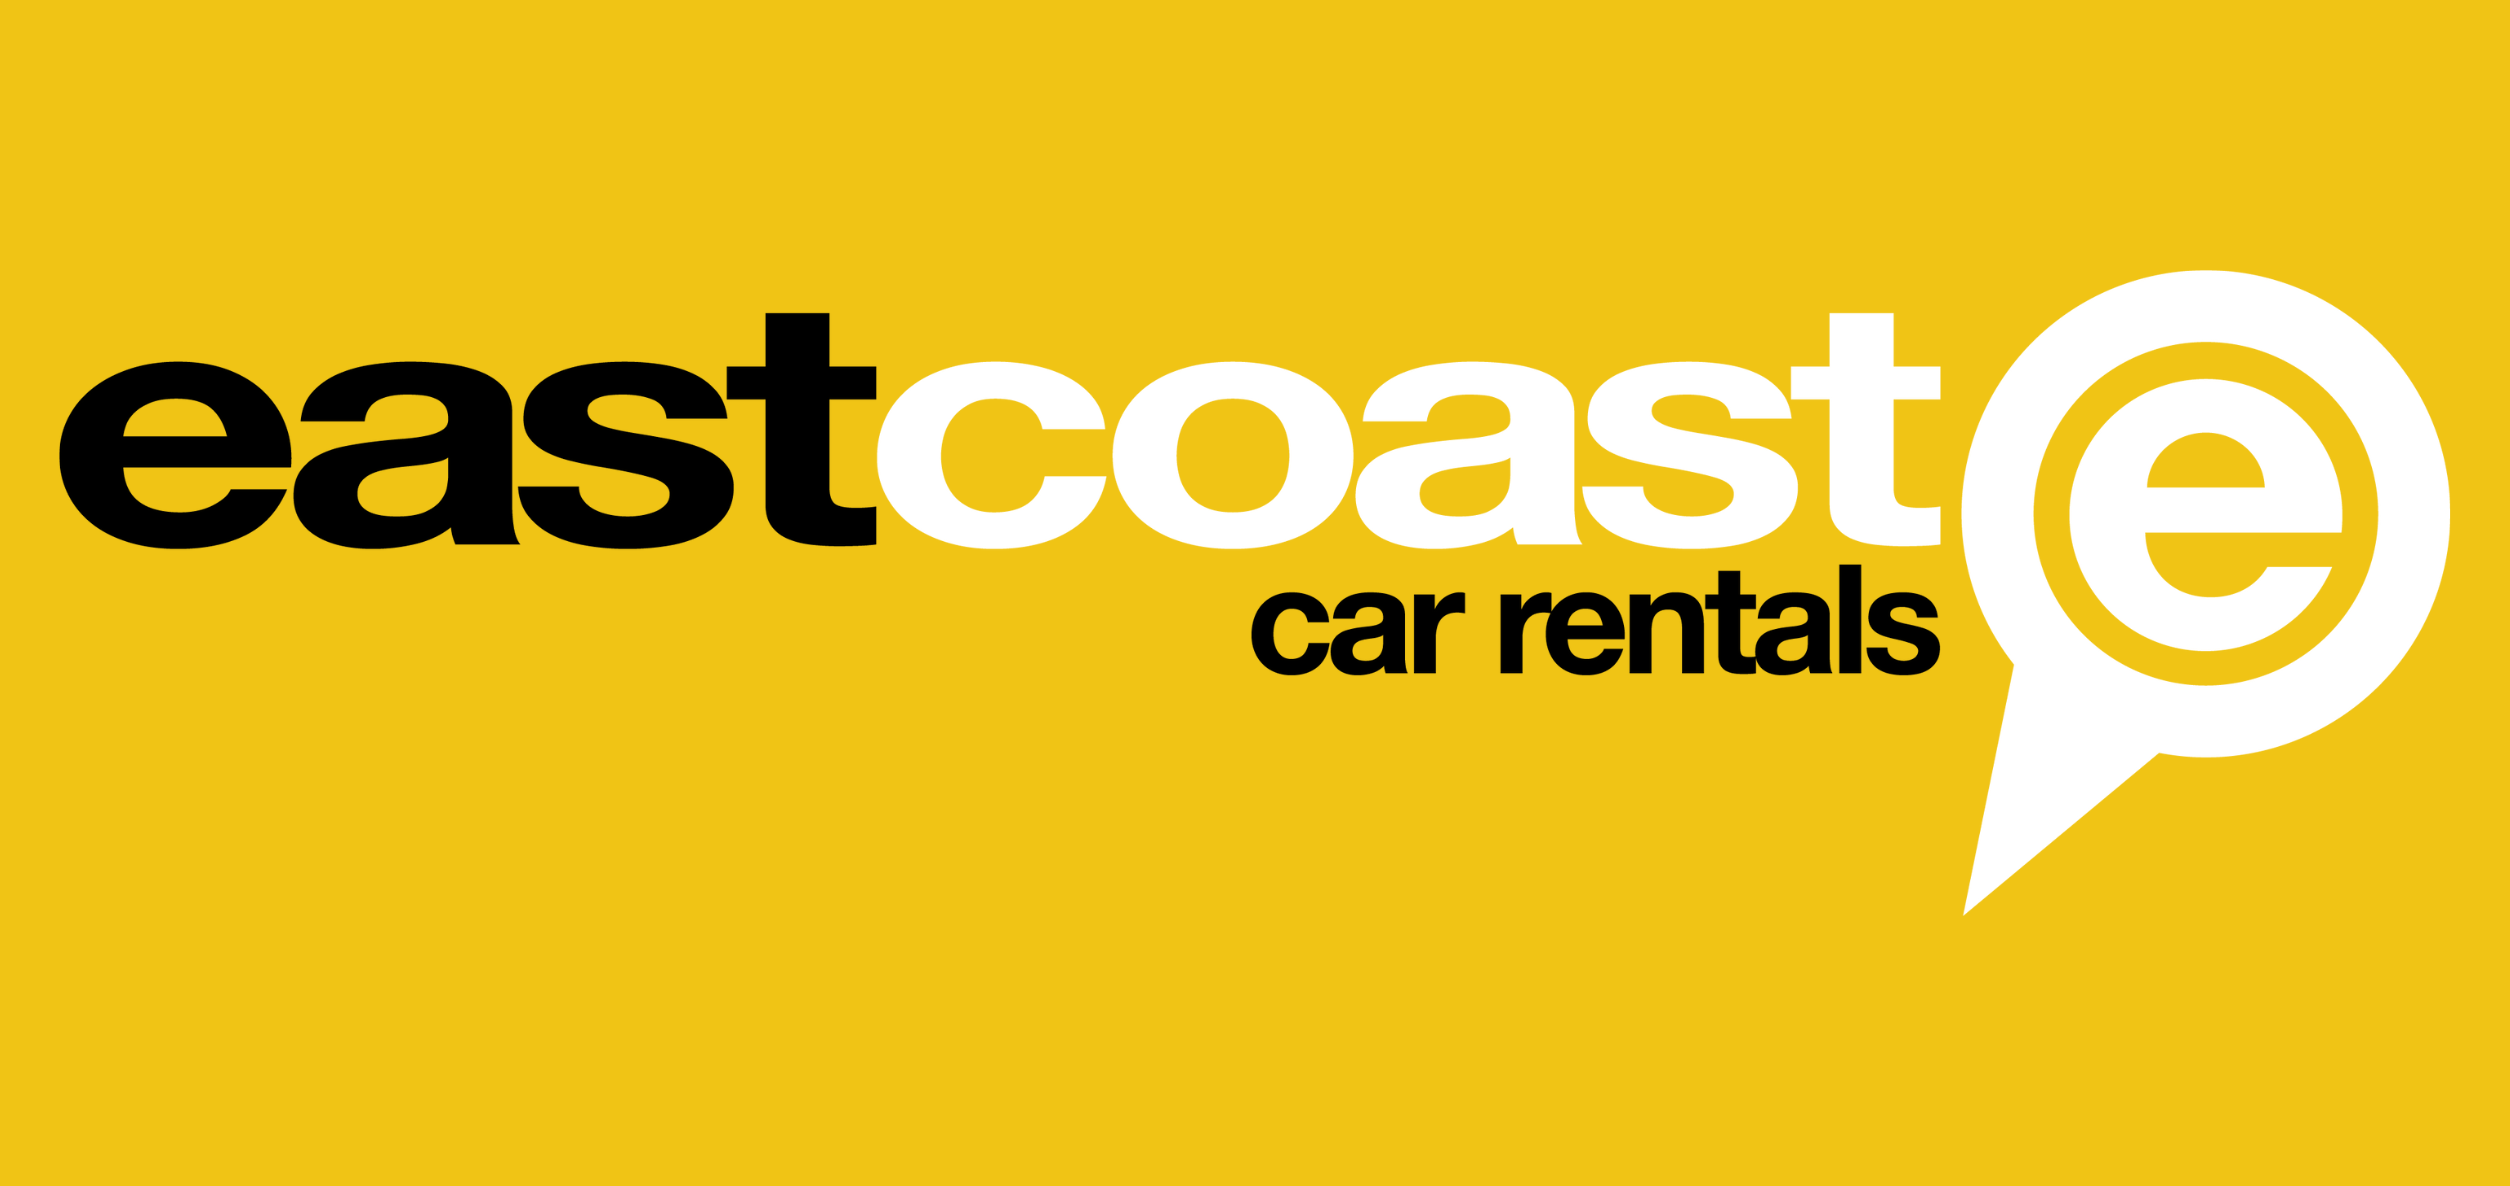 2East Coast Car Rentals